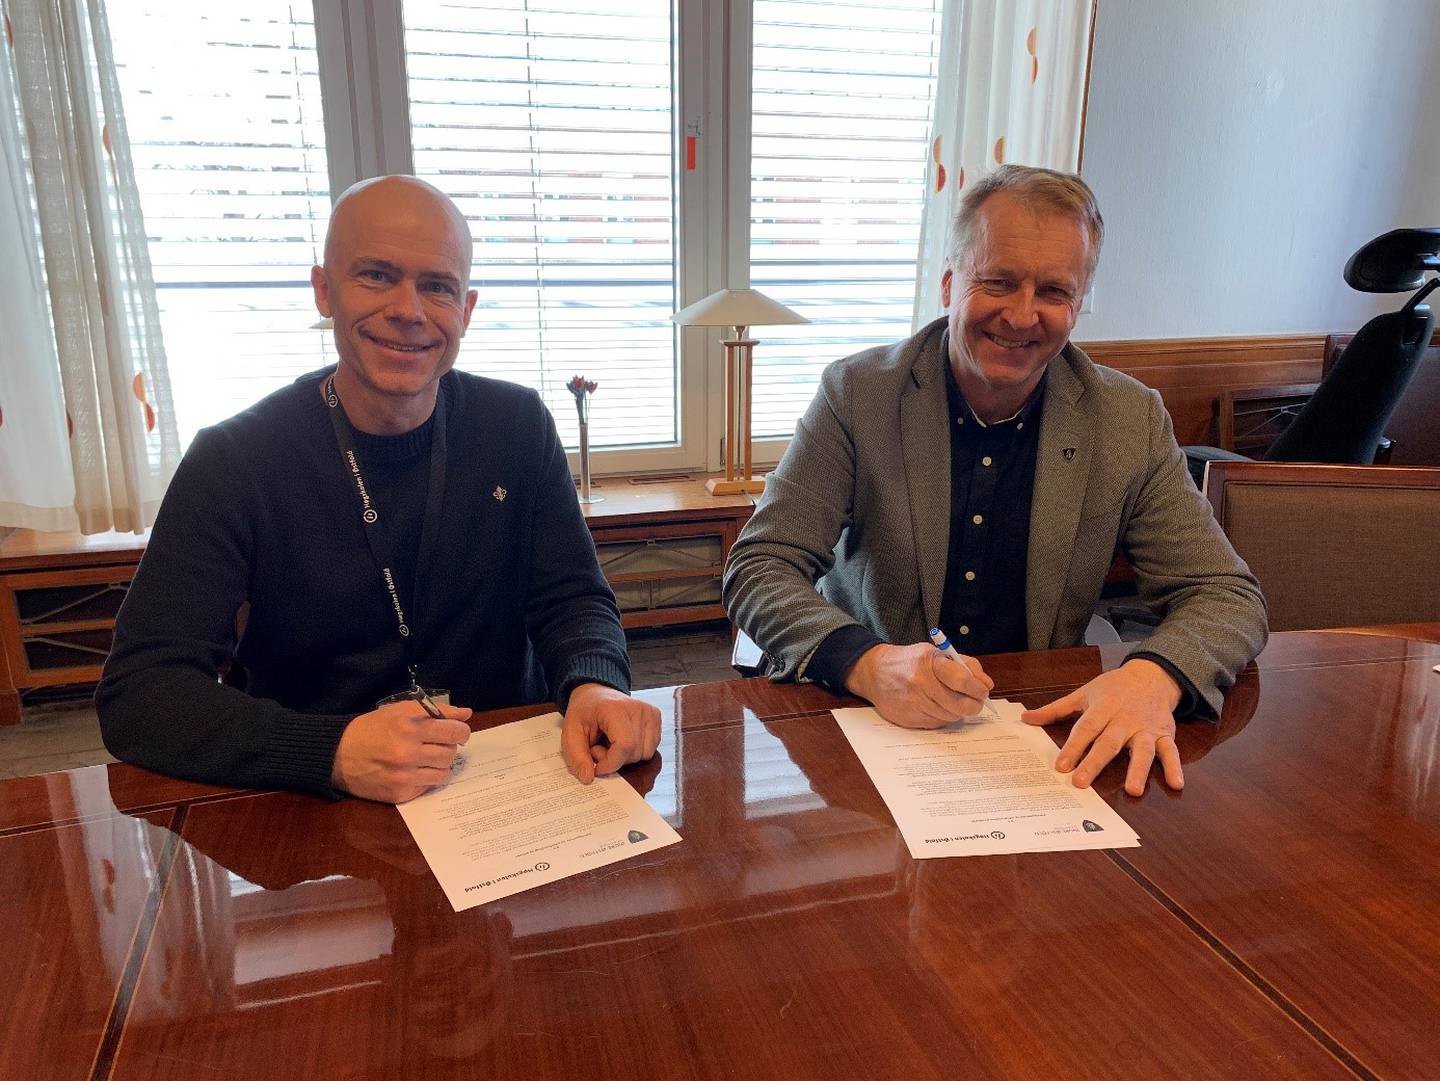 Rektor Lars-Petter Jelsness-Jørgensen ved HiØ og regionrådsleder og ordfører i Indre Østfold kommune, Saxe Frøshaug har signert samarbeidsavtalen om oppstart av bachelorutdanning i sykepleie i Mysen.